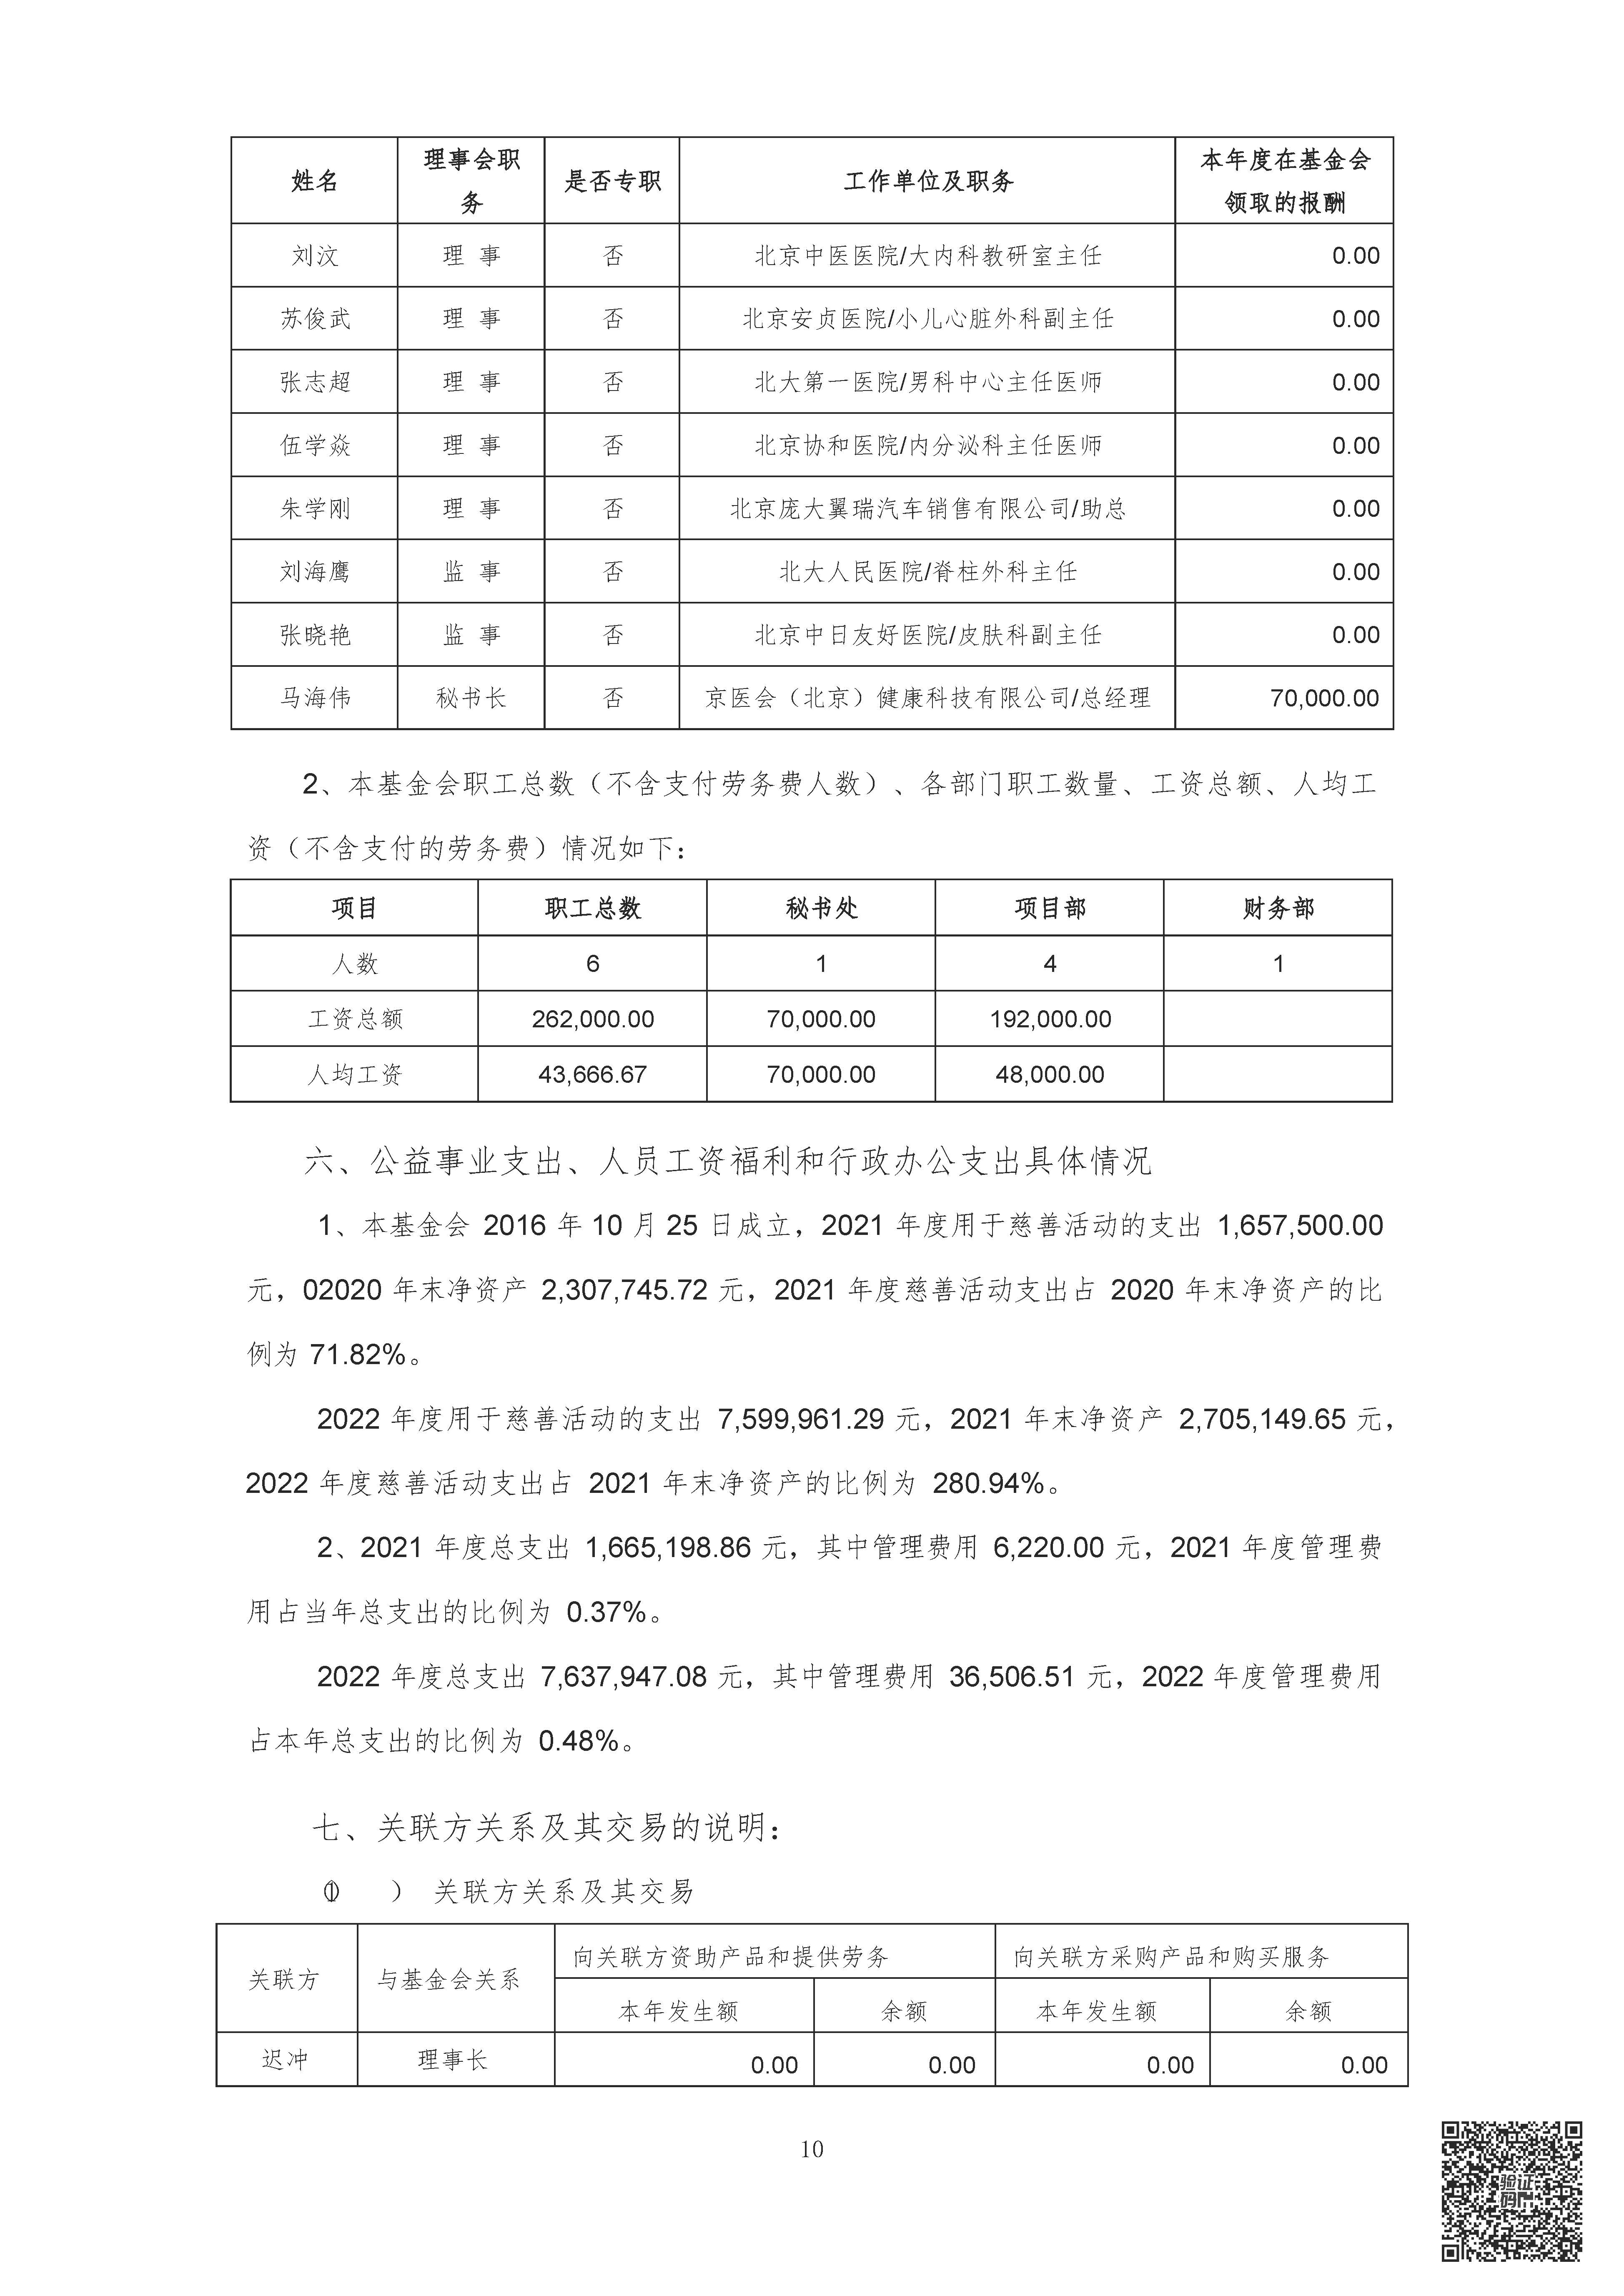 2022年审计报告-北京鼎医公益基金会_页面_11